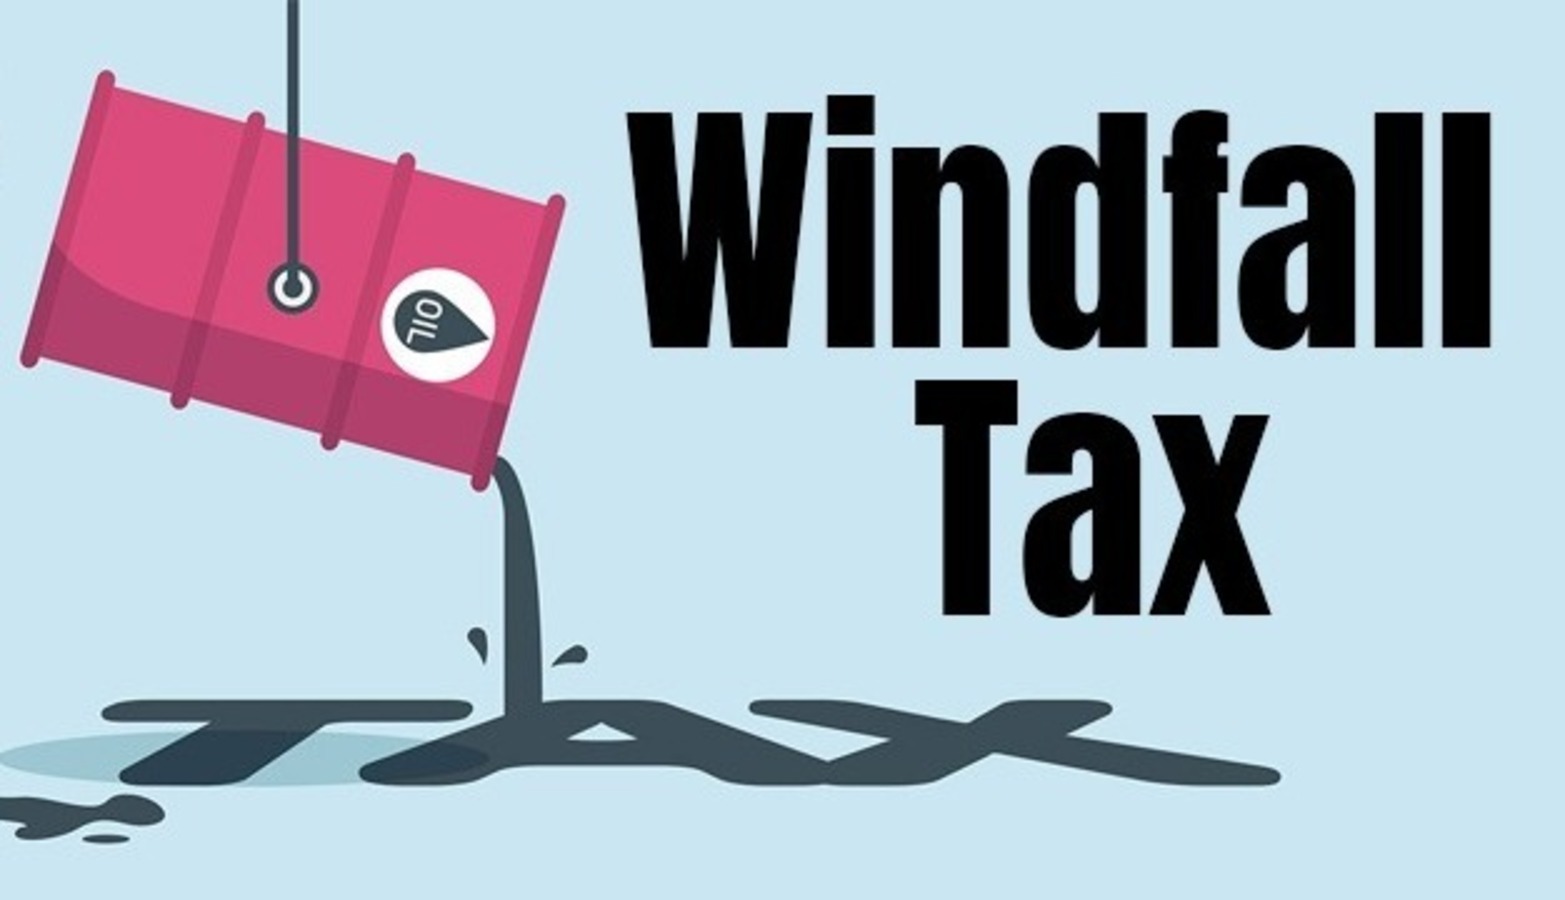 સરકારે ક્રૂડ પર WindFall Tax વધાર્યો, પેટ્રોલ-ડીઝલ અને ATF પર નિકાસ ડ્યુટી શૂન્ય છે.